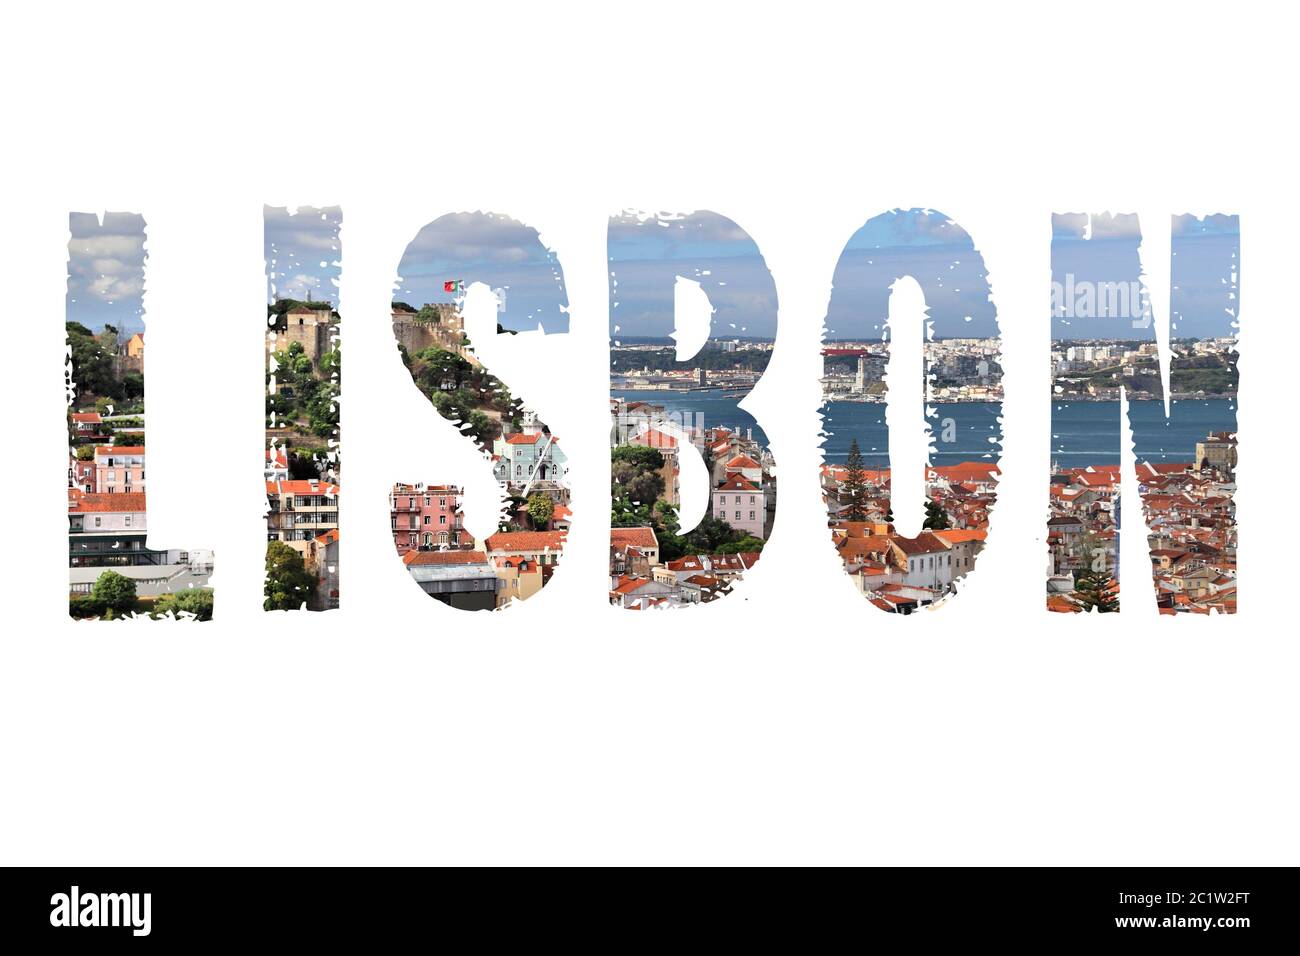 Lissabon Text Schild - Portugal Hauptstadt Name mit Hintergrund Reise  Postkarte Foto Stockfotografie - Alamy